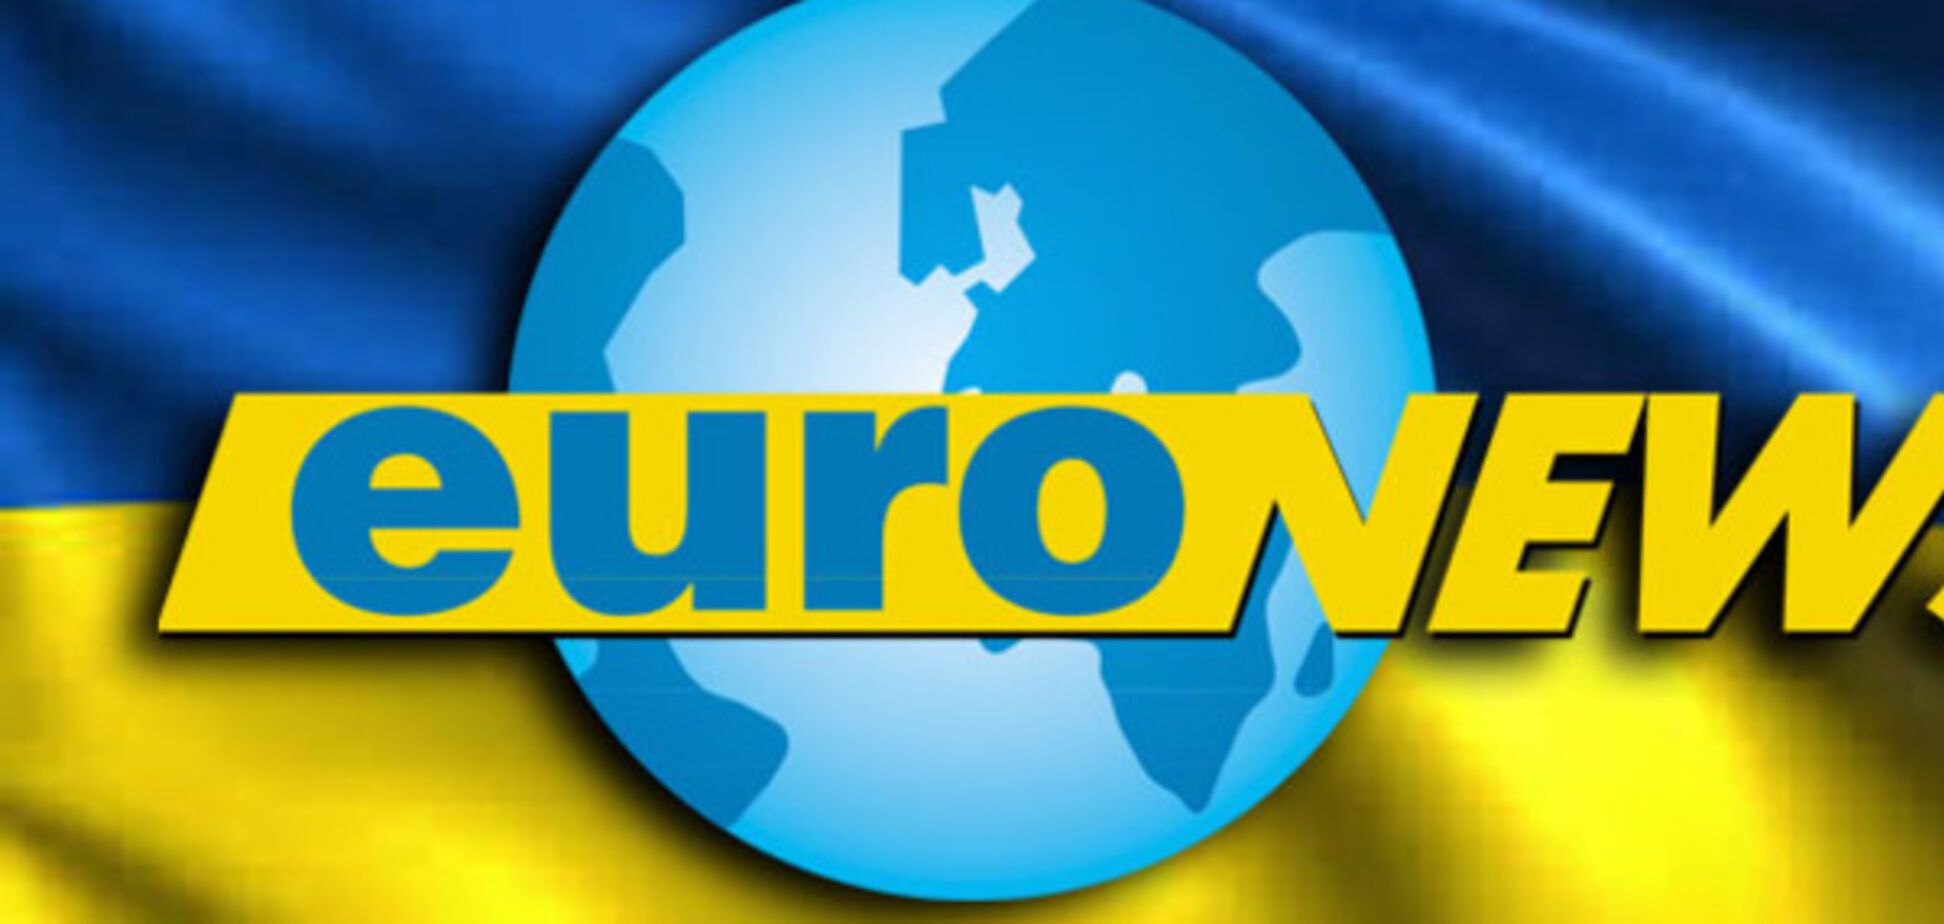 Украинский Euronews закрытвается: что известно об этом проекте